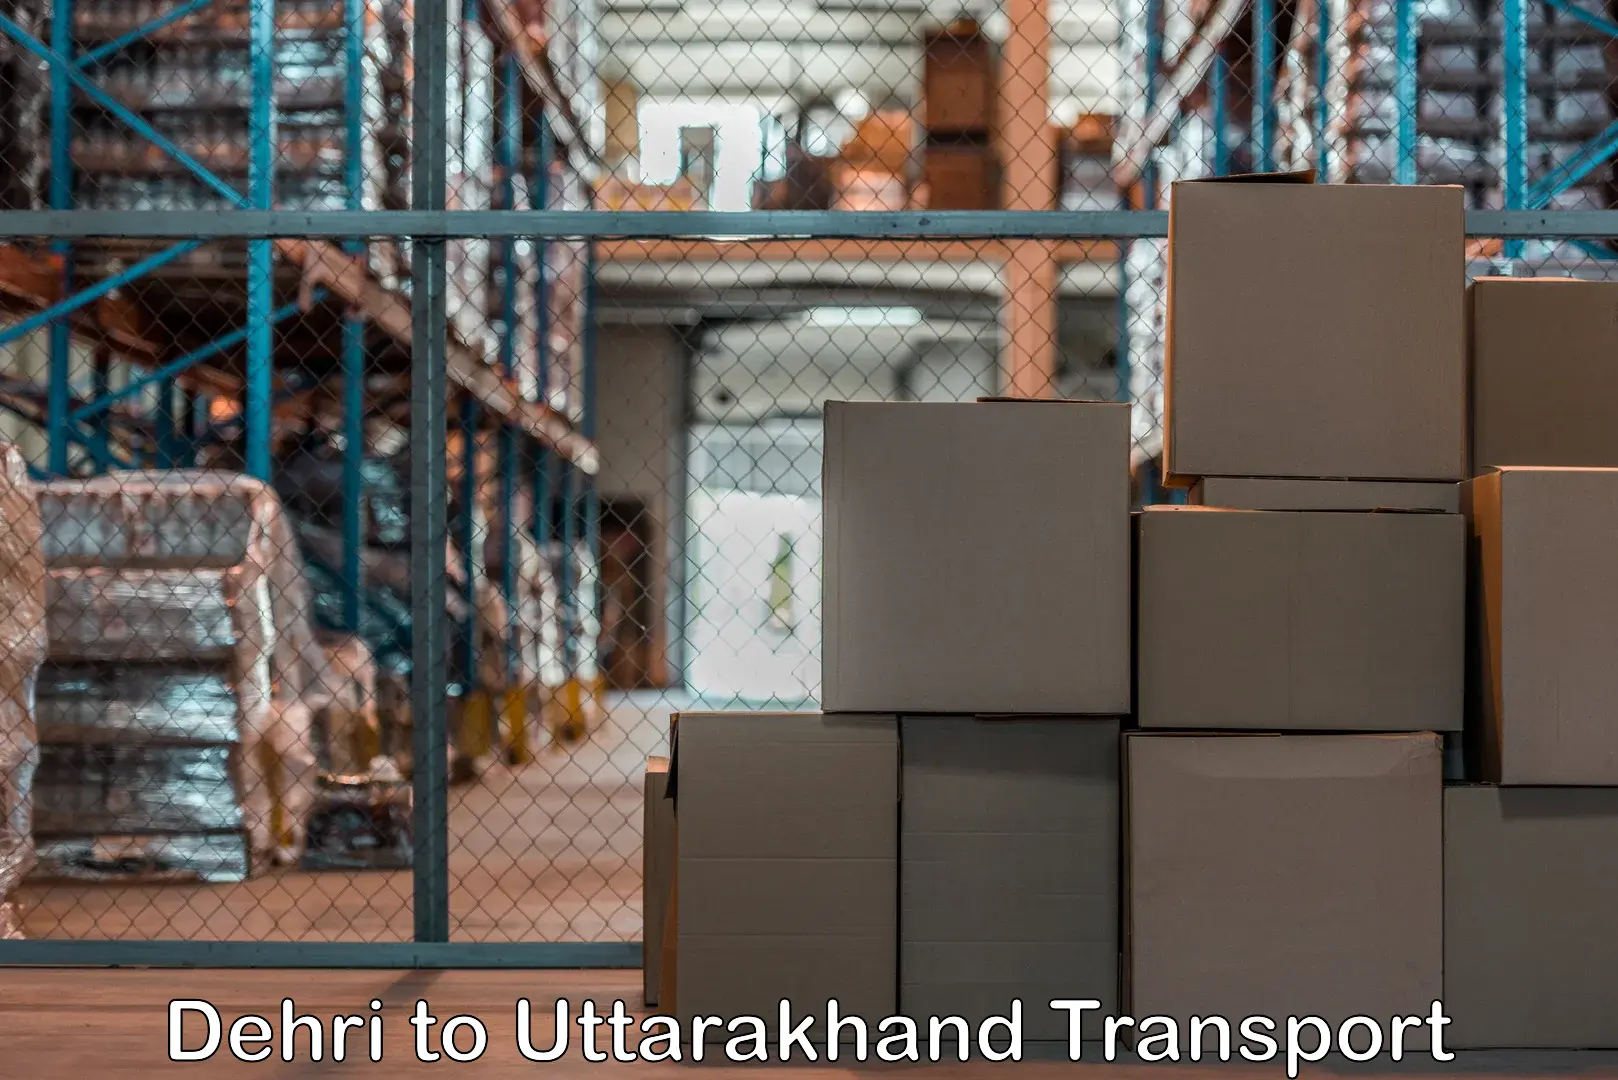 Cargo train transport services Dehri to Uttarakhand